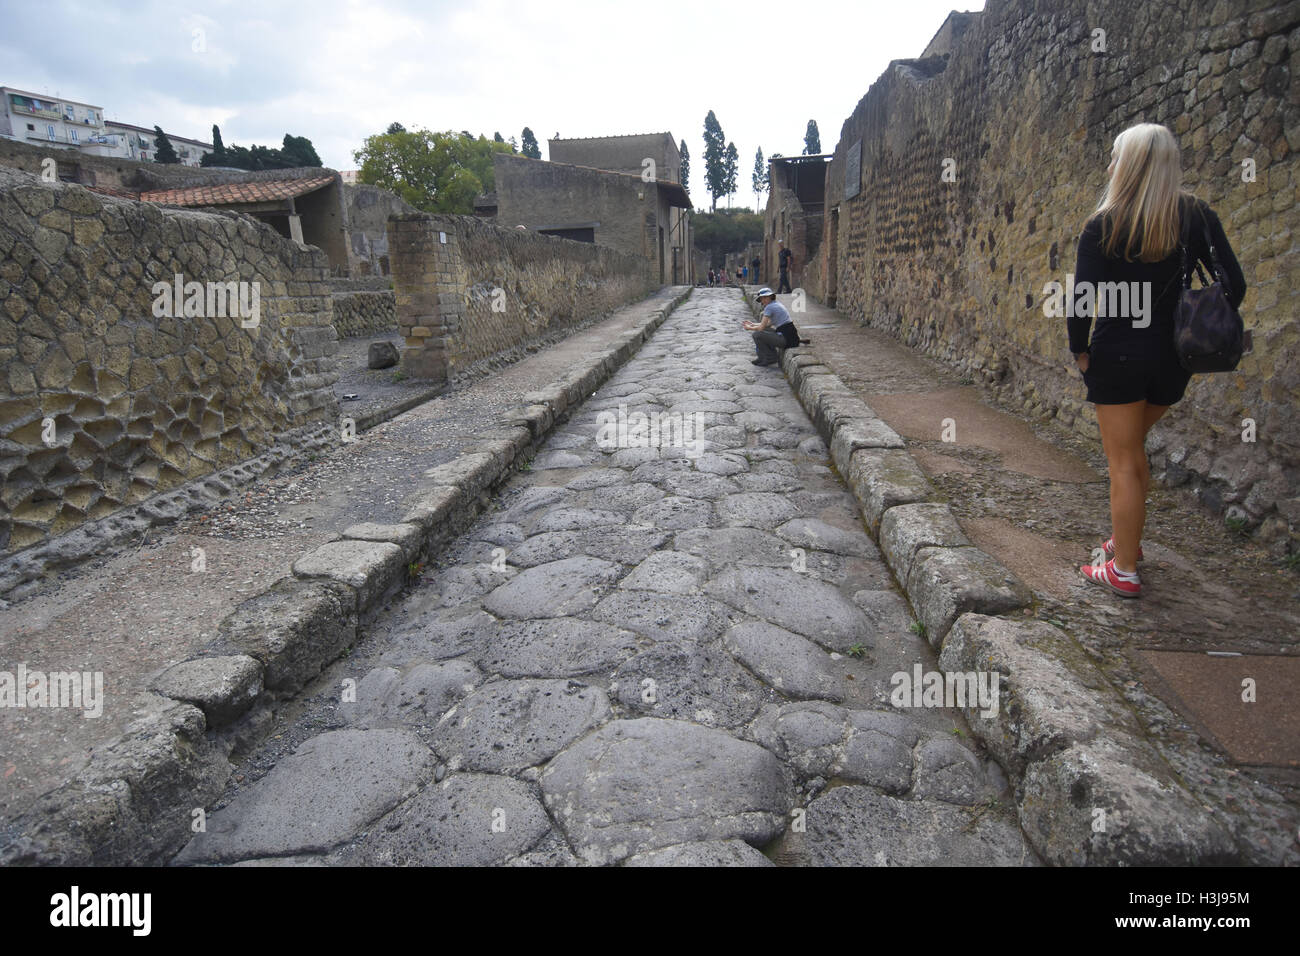 Les vestiges romains, les corps et les fresques de Pompéi, Herculanum, près de l'Italie Banque D'Images